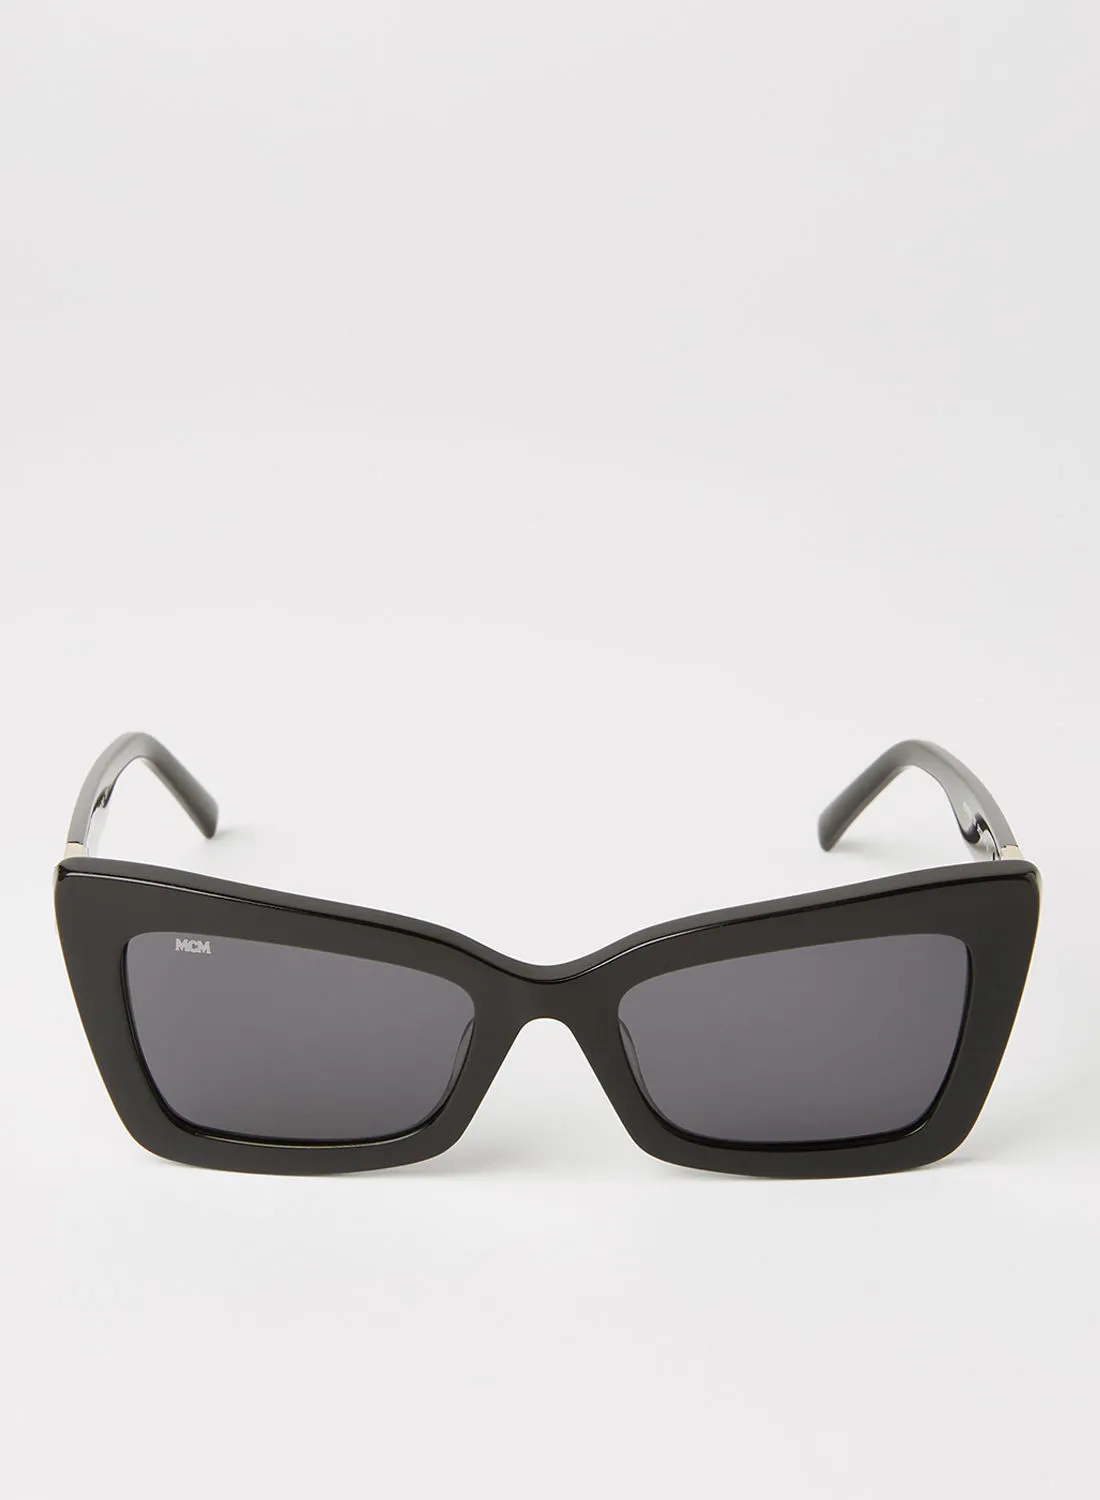 MCM Women's Rectangular Sunglasses - Lens Size: 54 mm